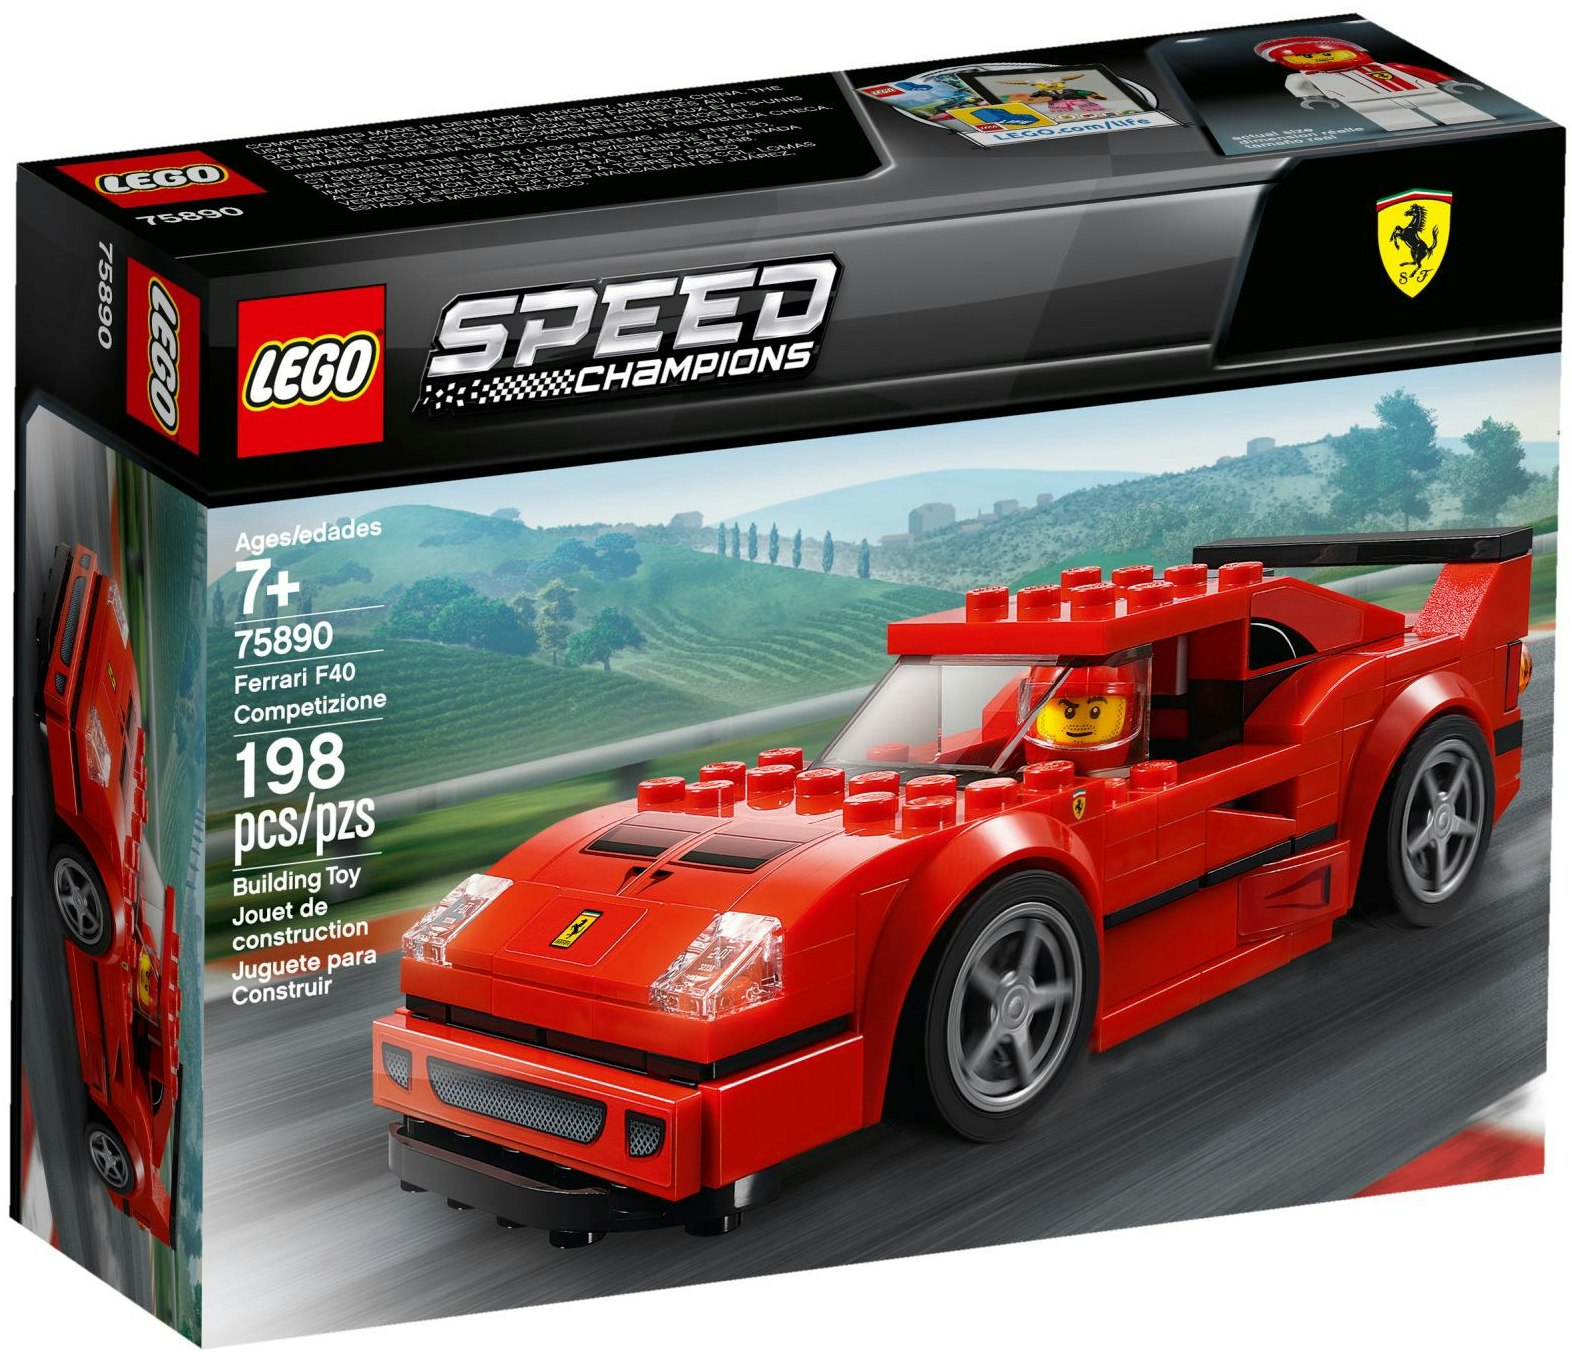 LEGO Speed Champions Ferrari F40 Competizione Set 75890